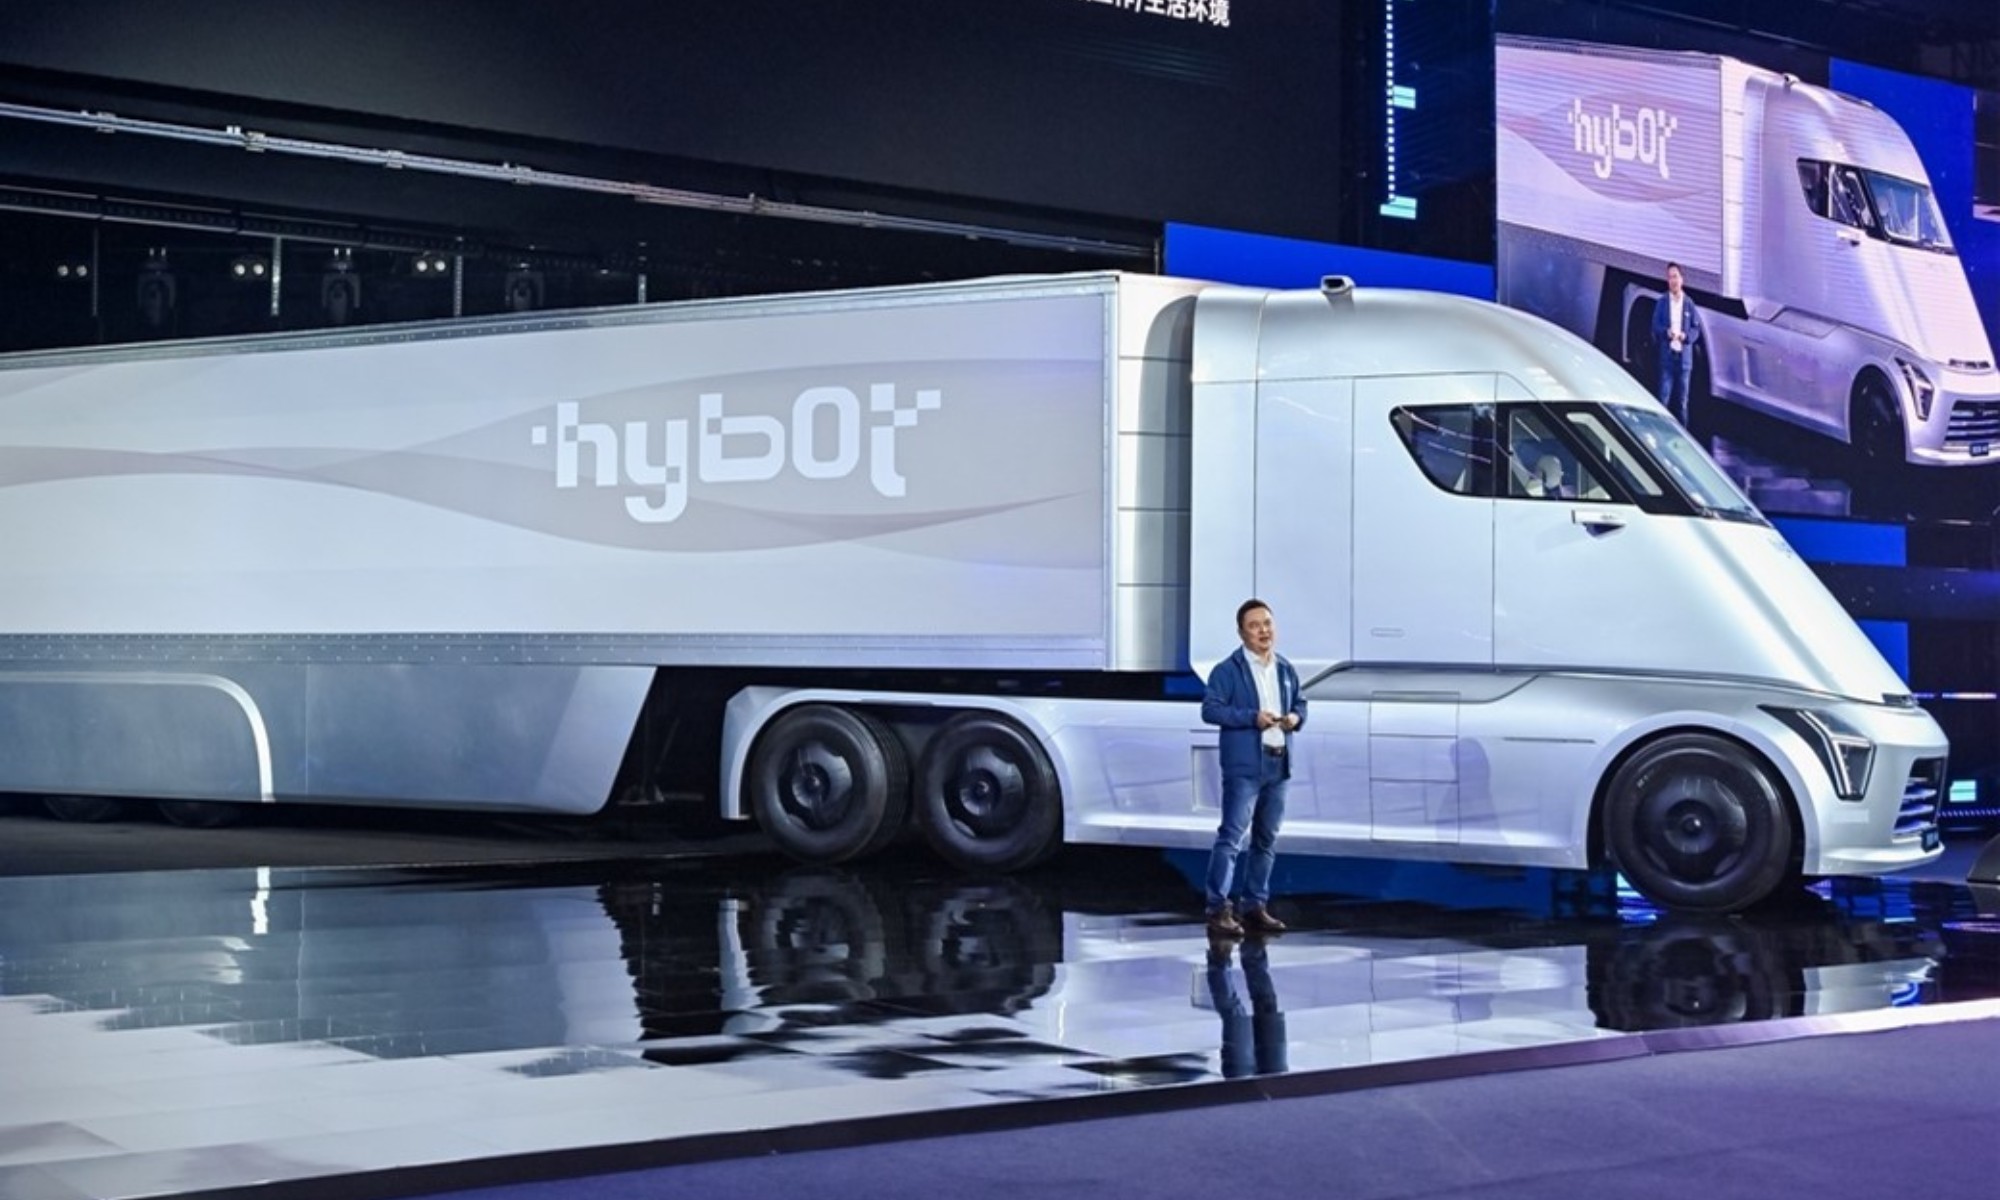 El Hybot H49 es un camión de hidrógeno que también destaca por su bajo coeficiente aerodinámico para reducir el consumo.